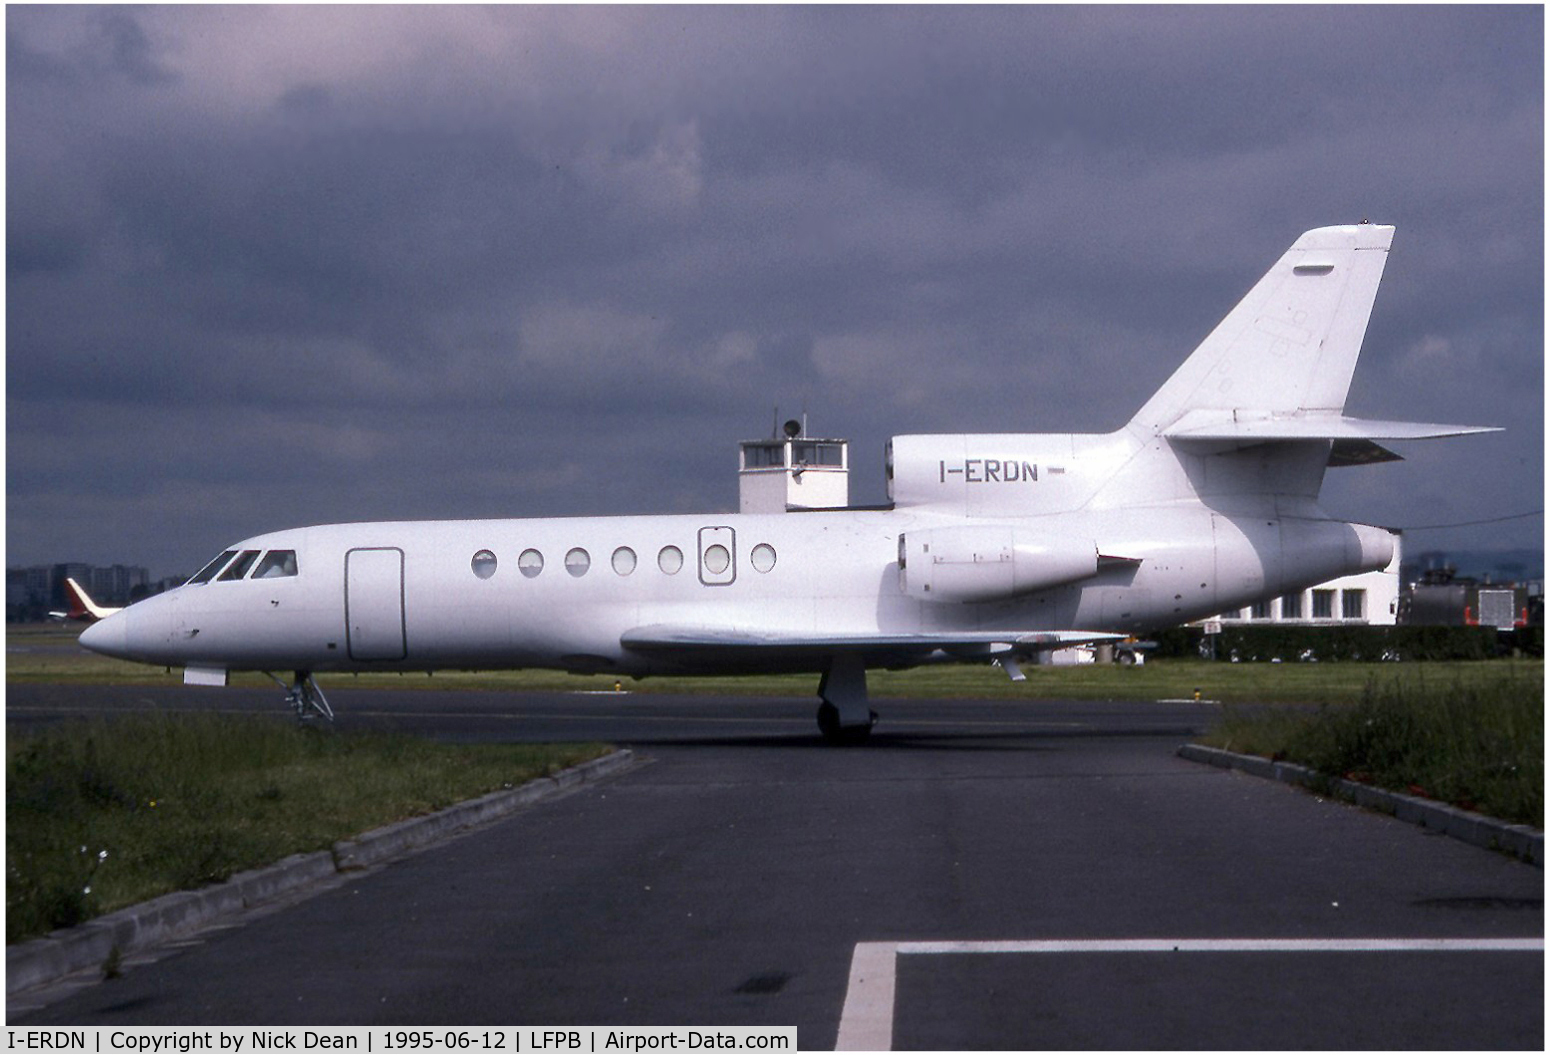 I-ERDN, 1981 Dassault Falcon 50 C/N 048, LFPB Paris Le Bourget